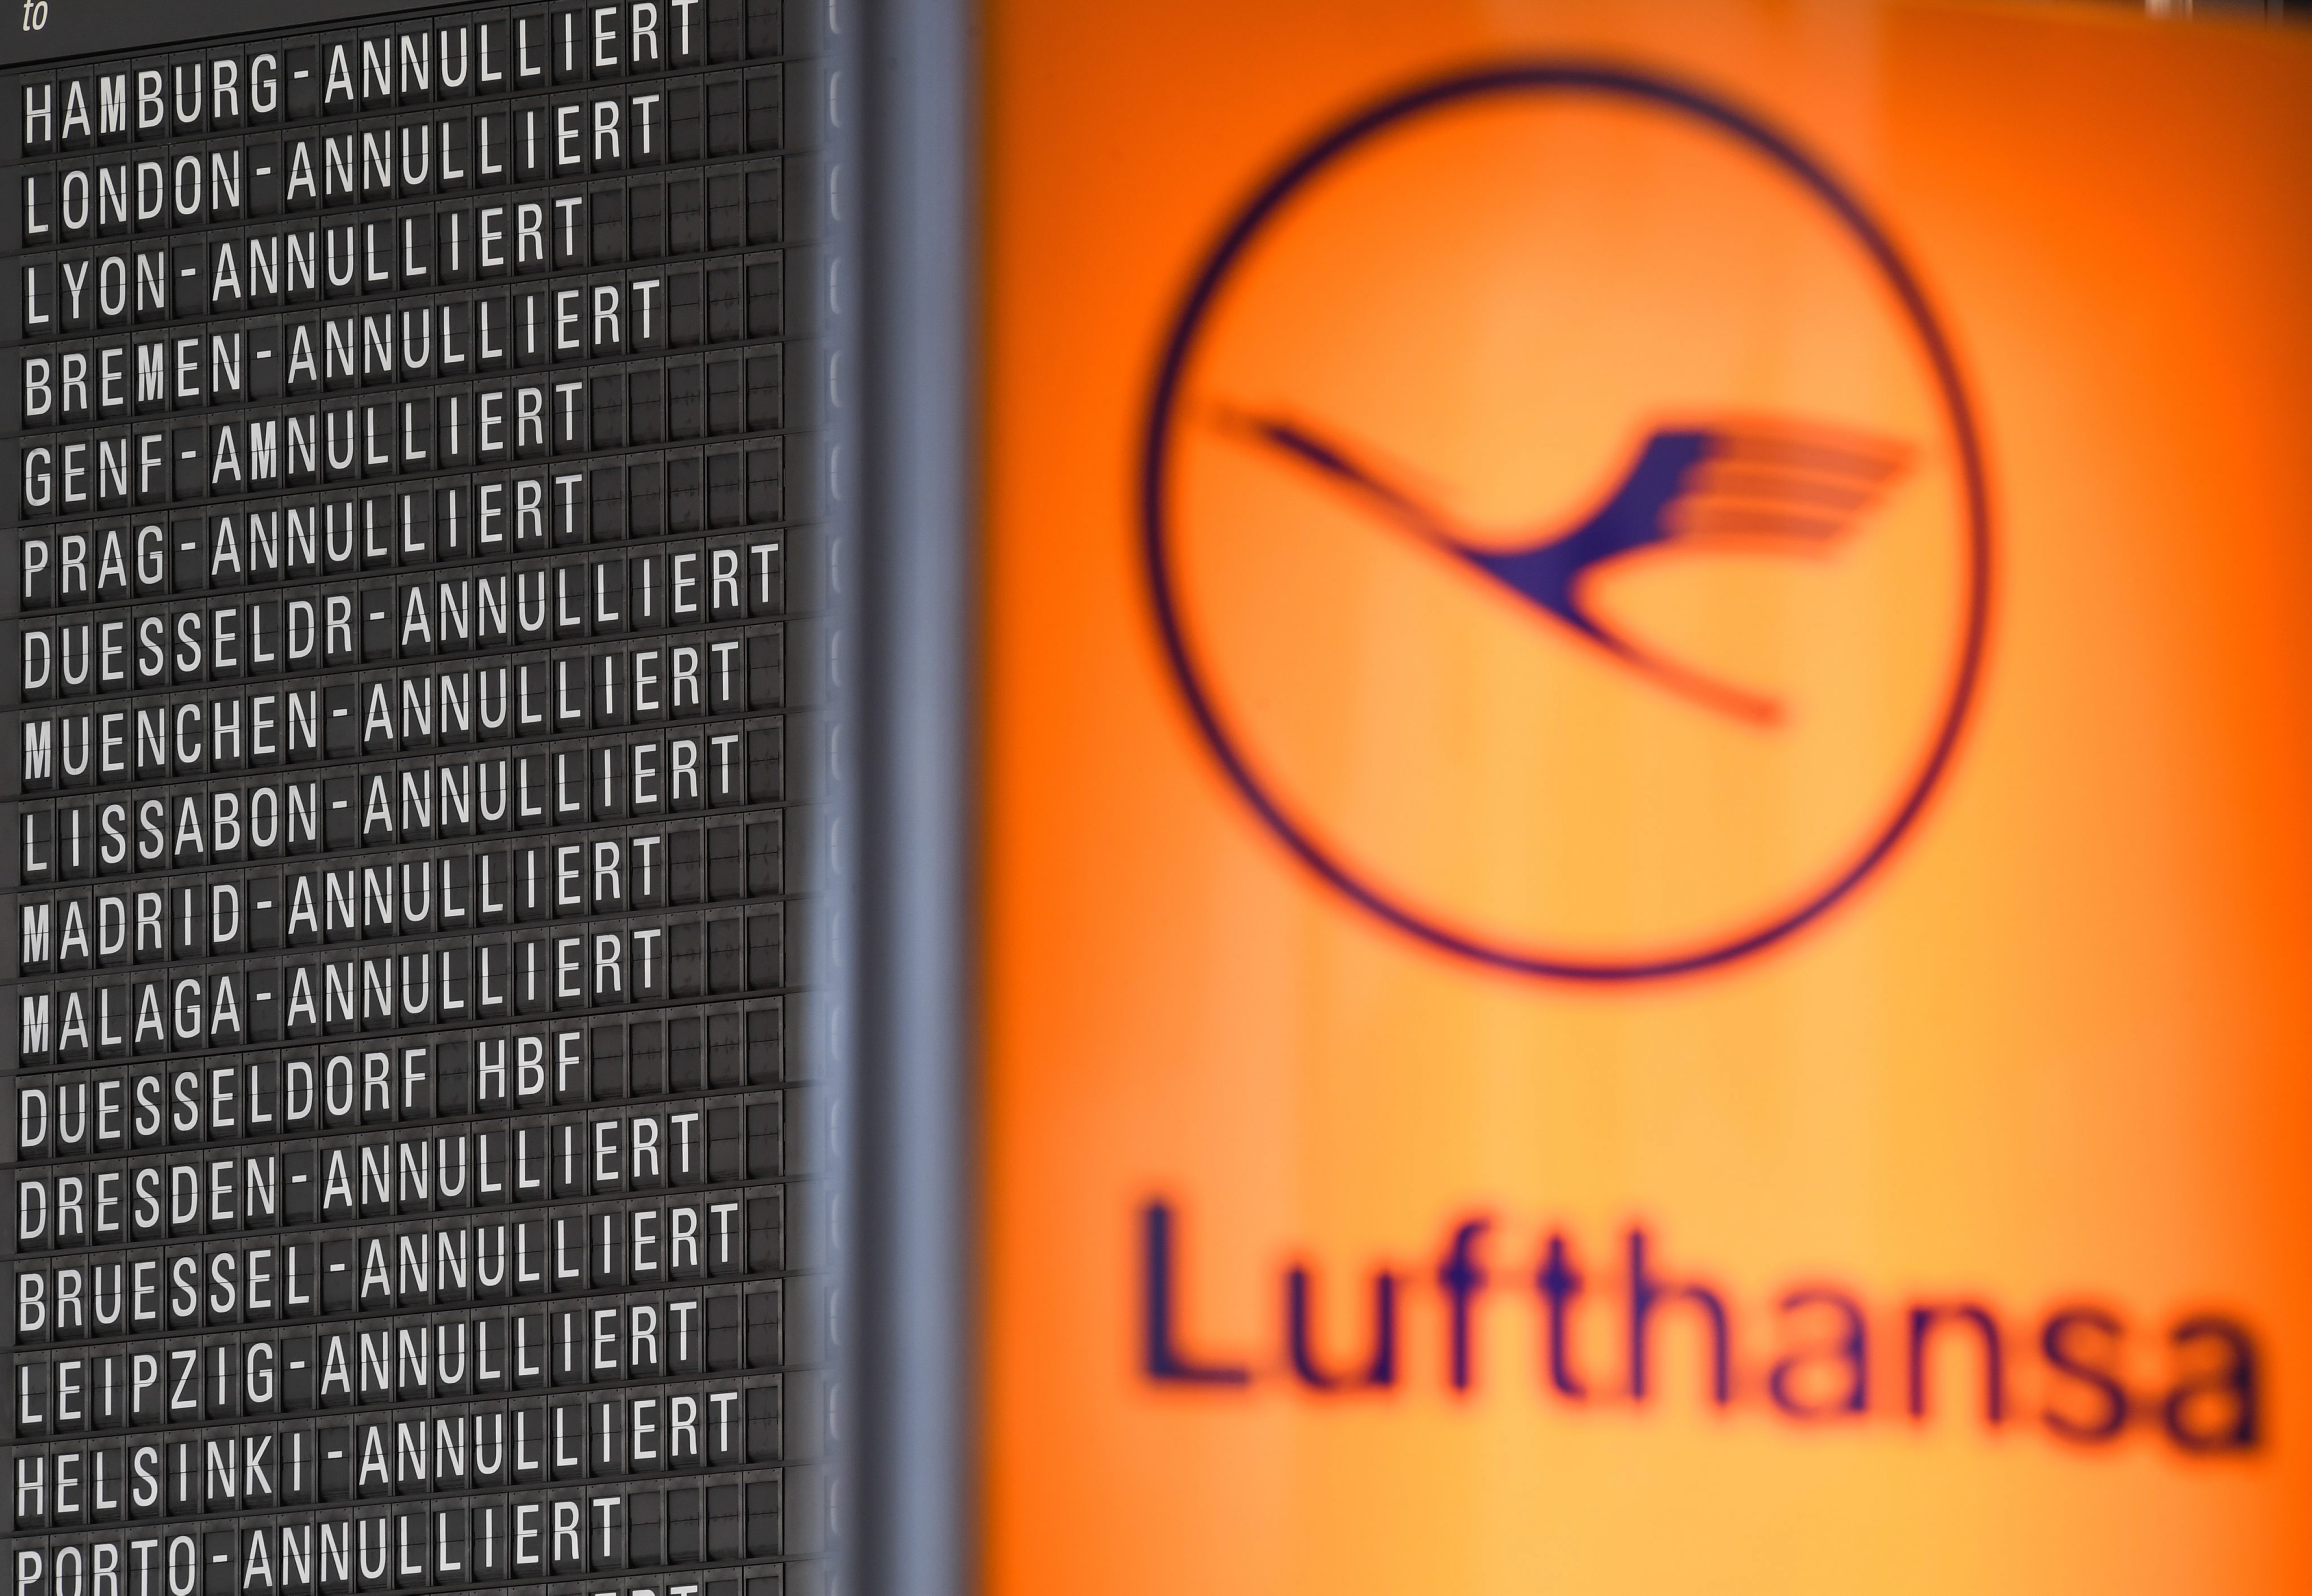 Επέκταση της συνεργασίας μεταξύ Lufthansa και Etihad